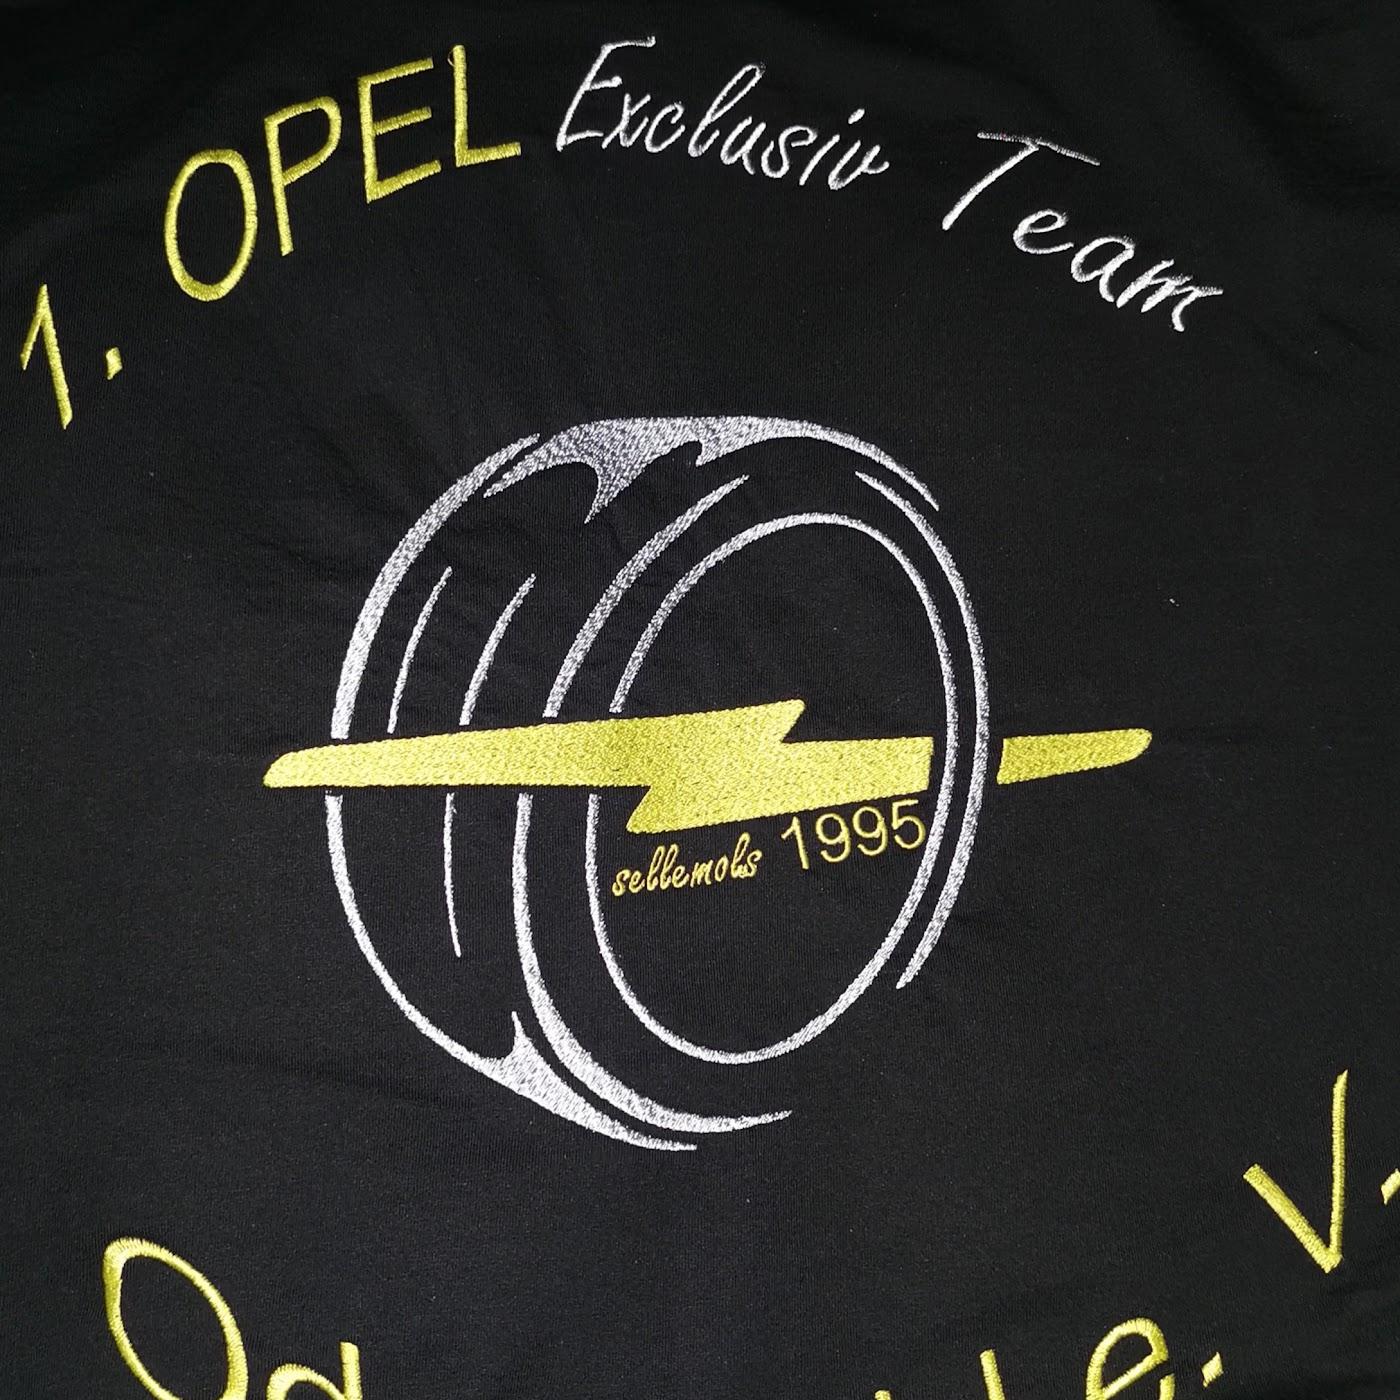 Restaurant "1.opel exclusiv Team Odenwald e. V." in Groß-Umstadt